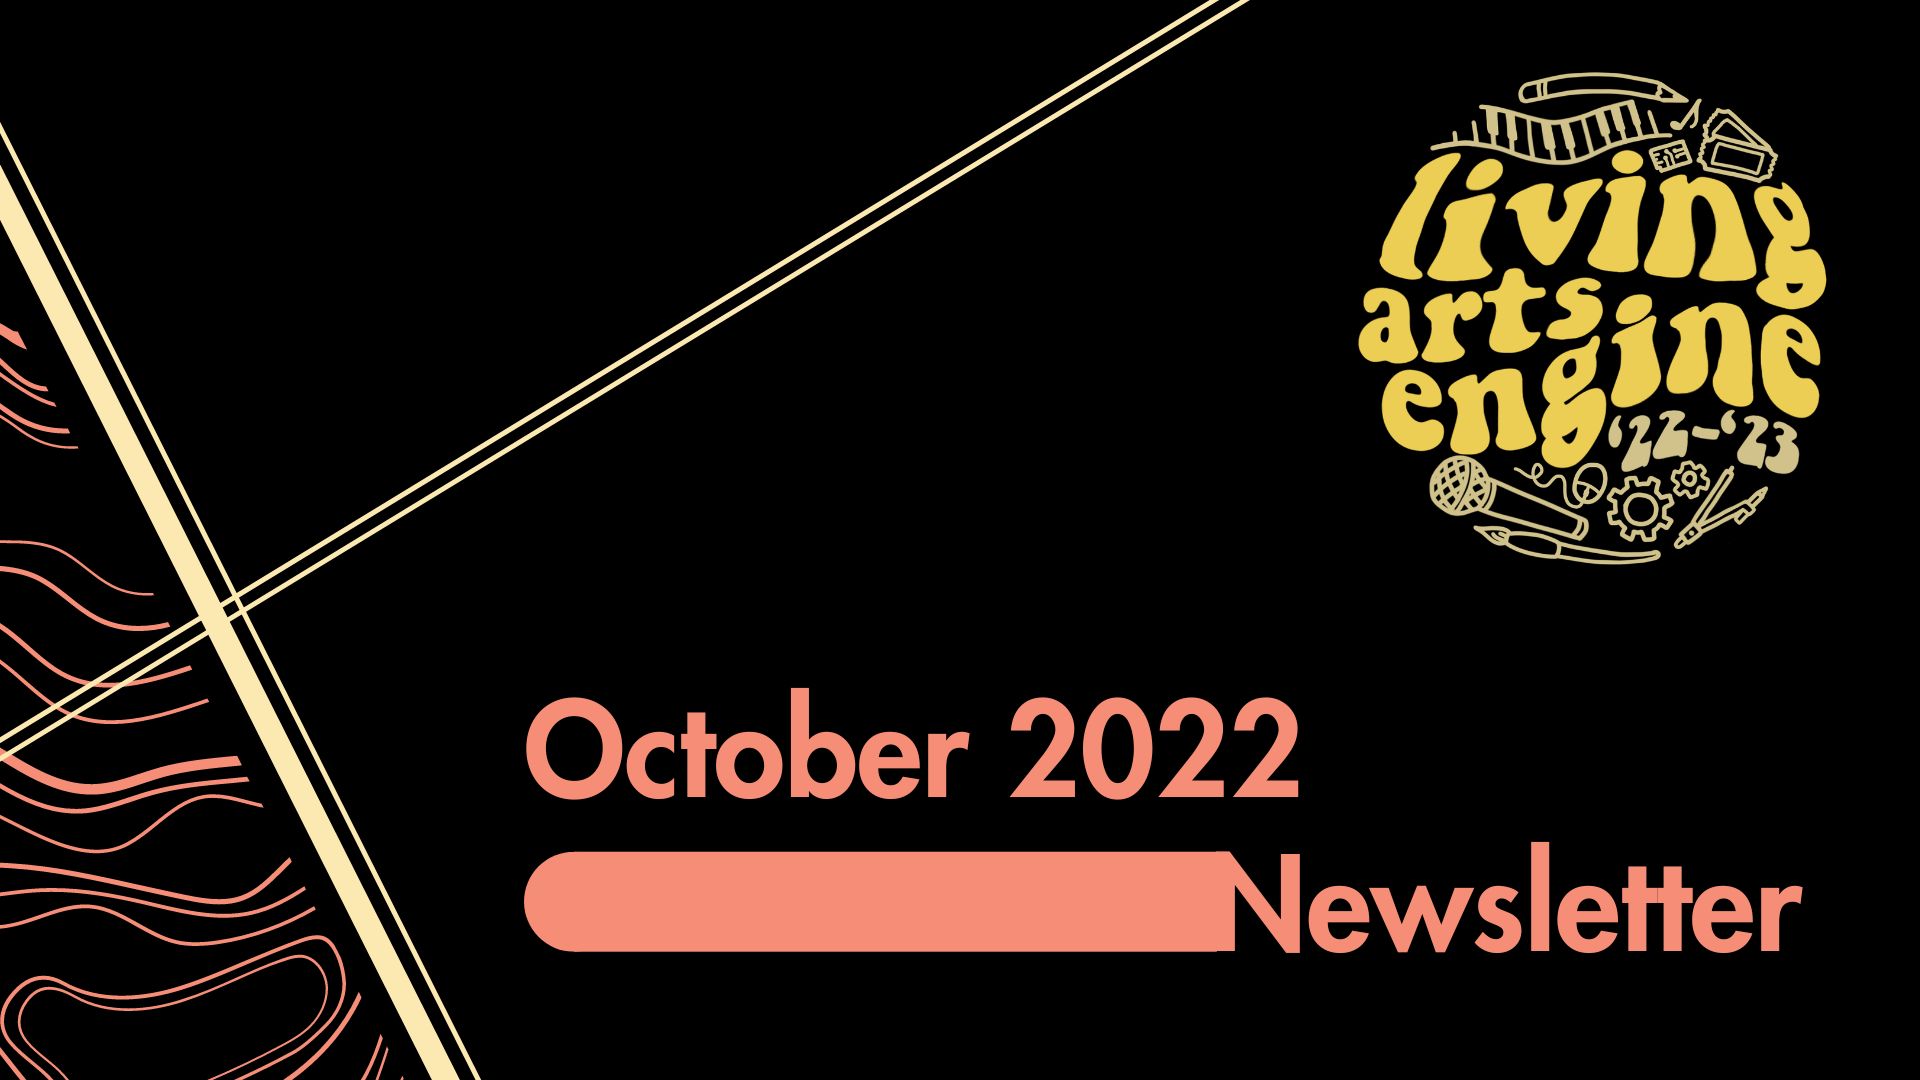 October 2022 Newsletter Cover